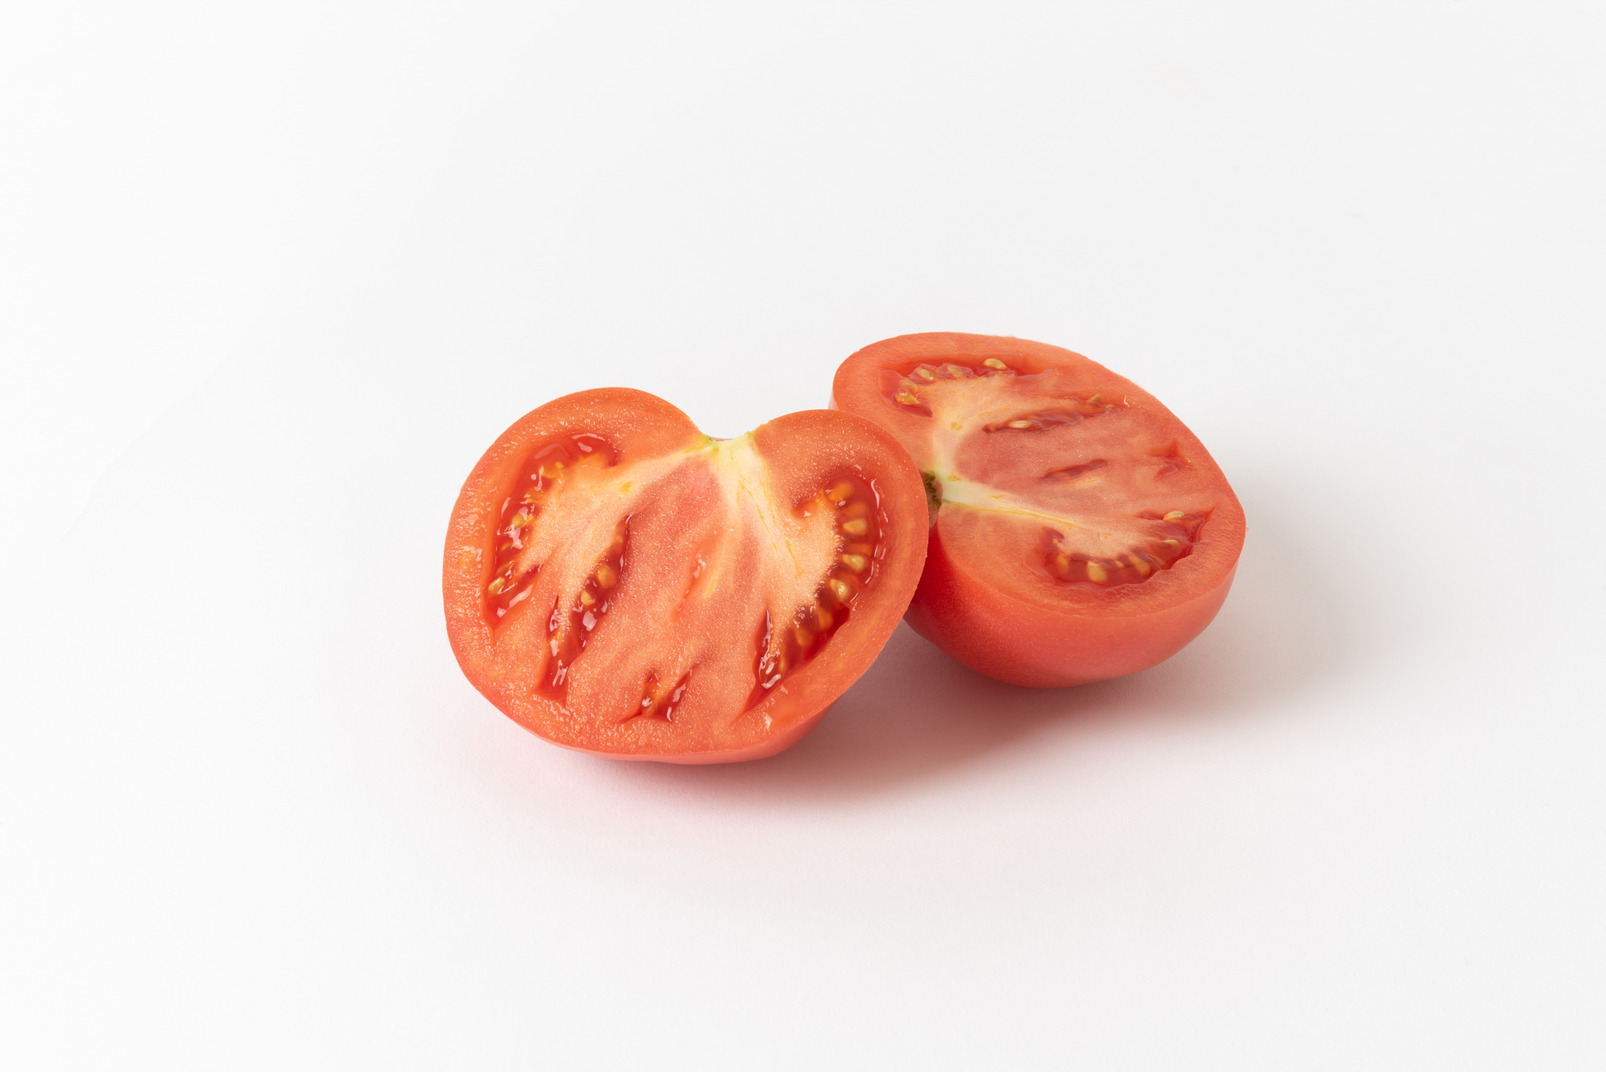 Tomato cut in half